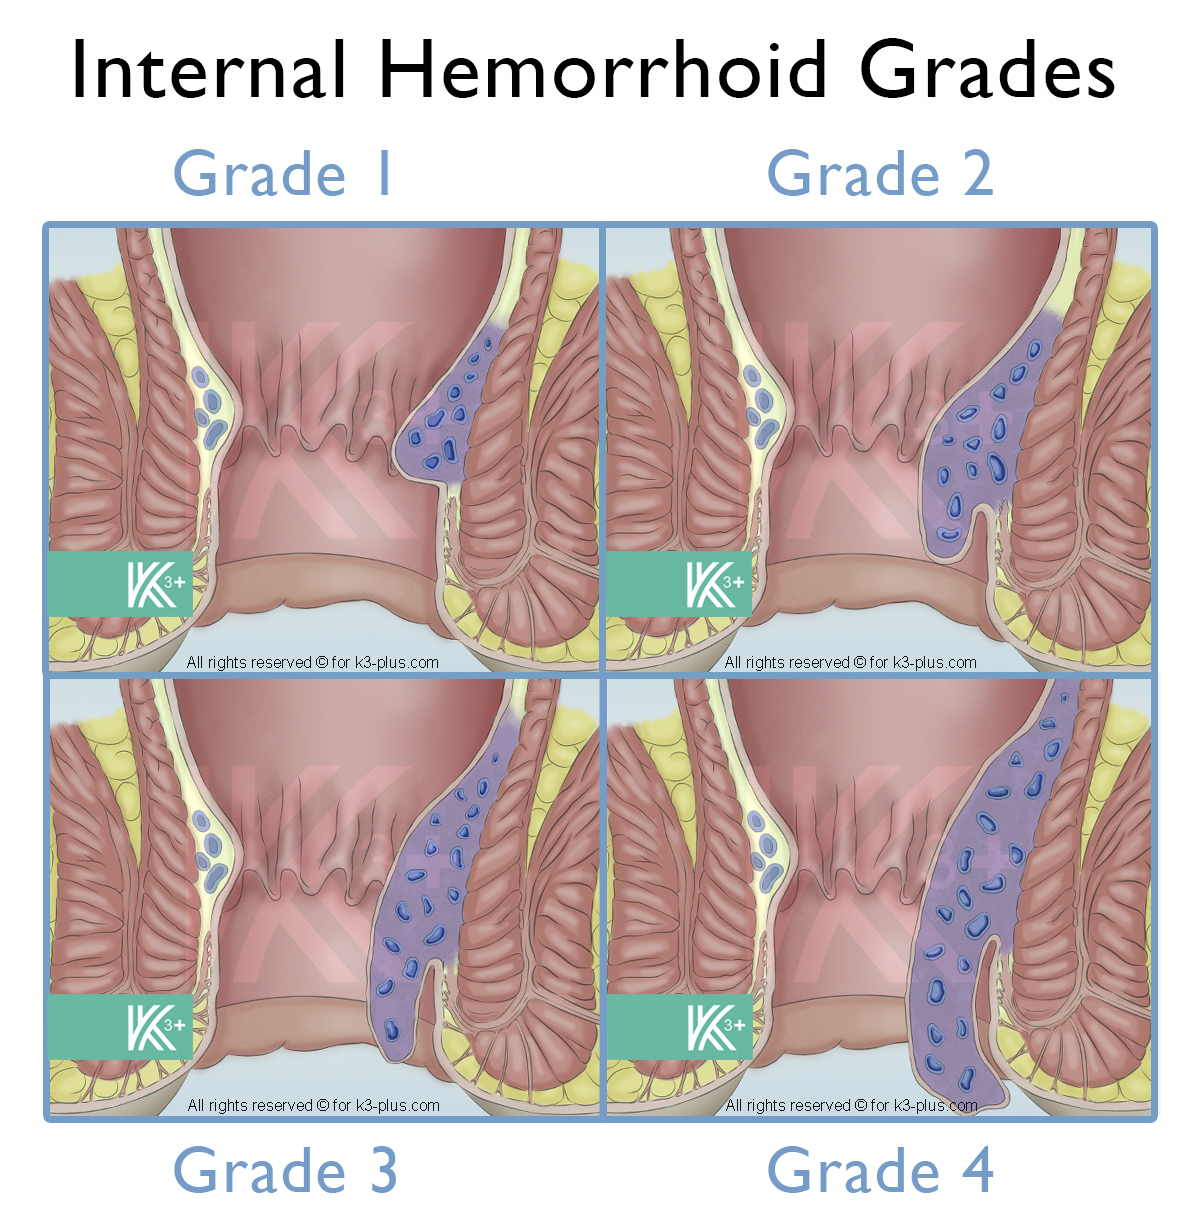 Internal Hemorrhoids grades